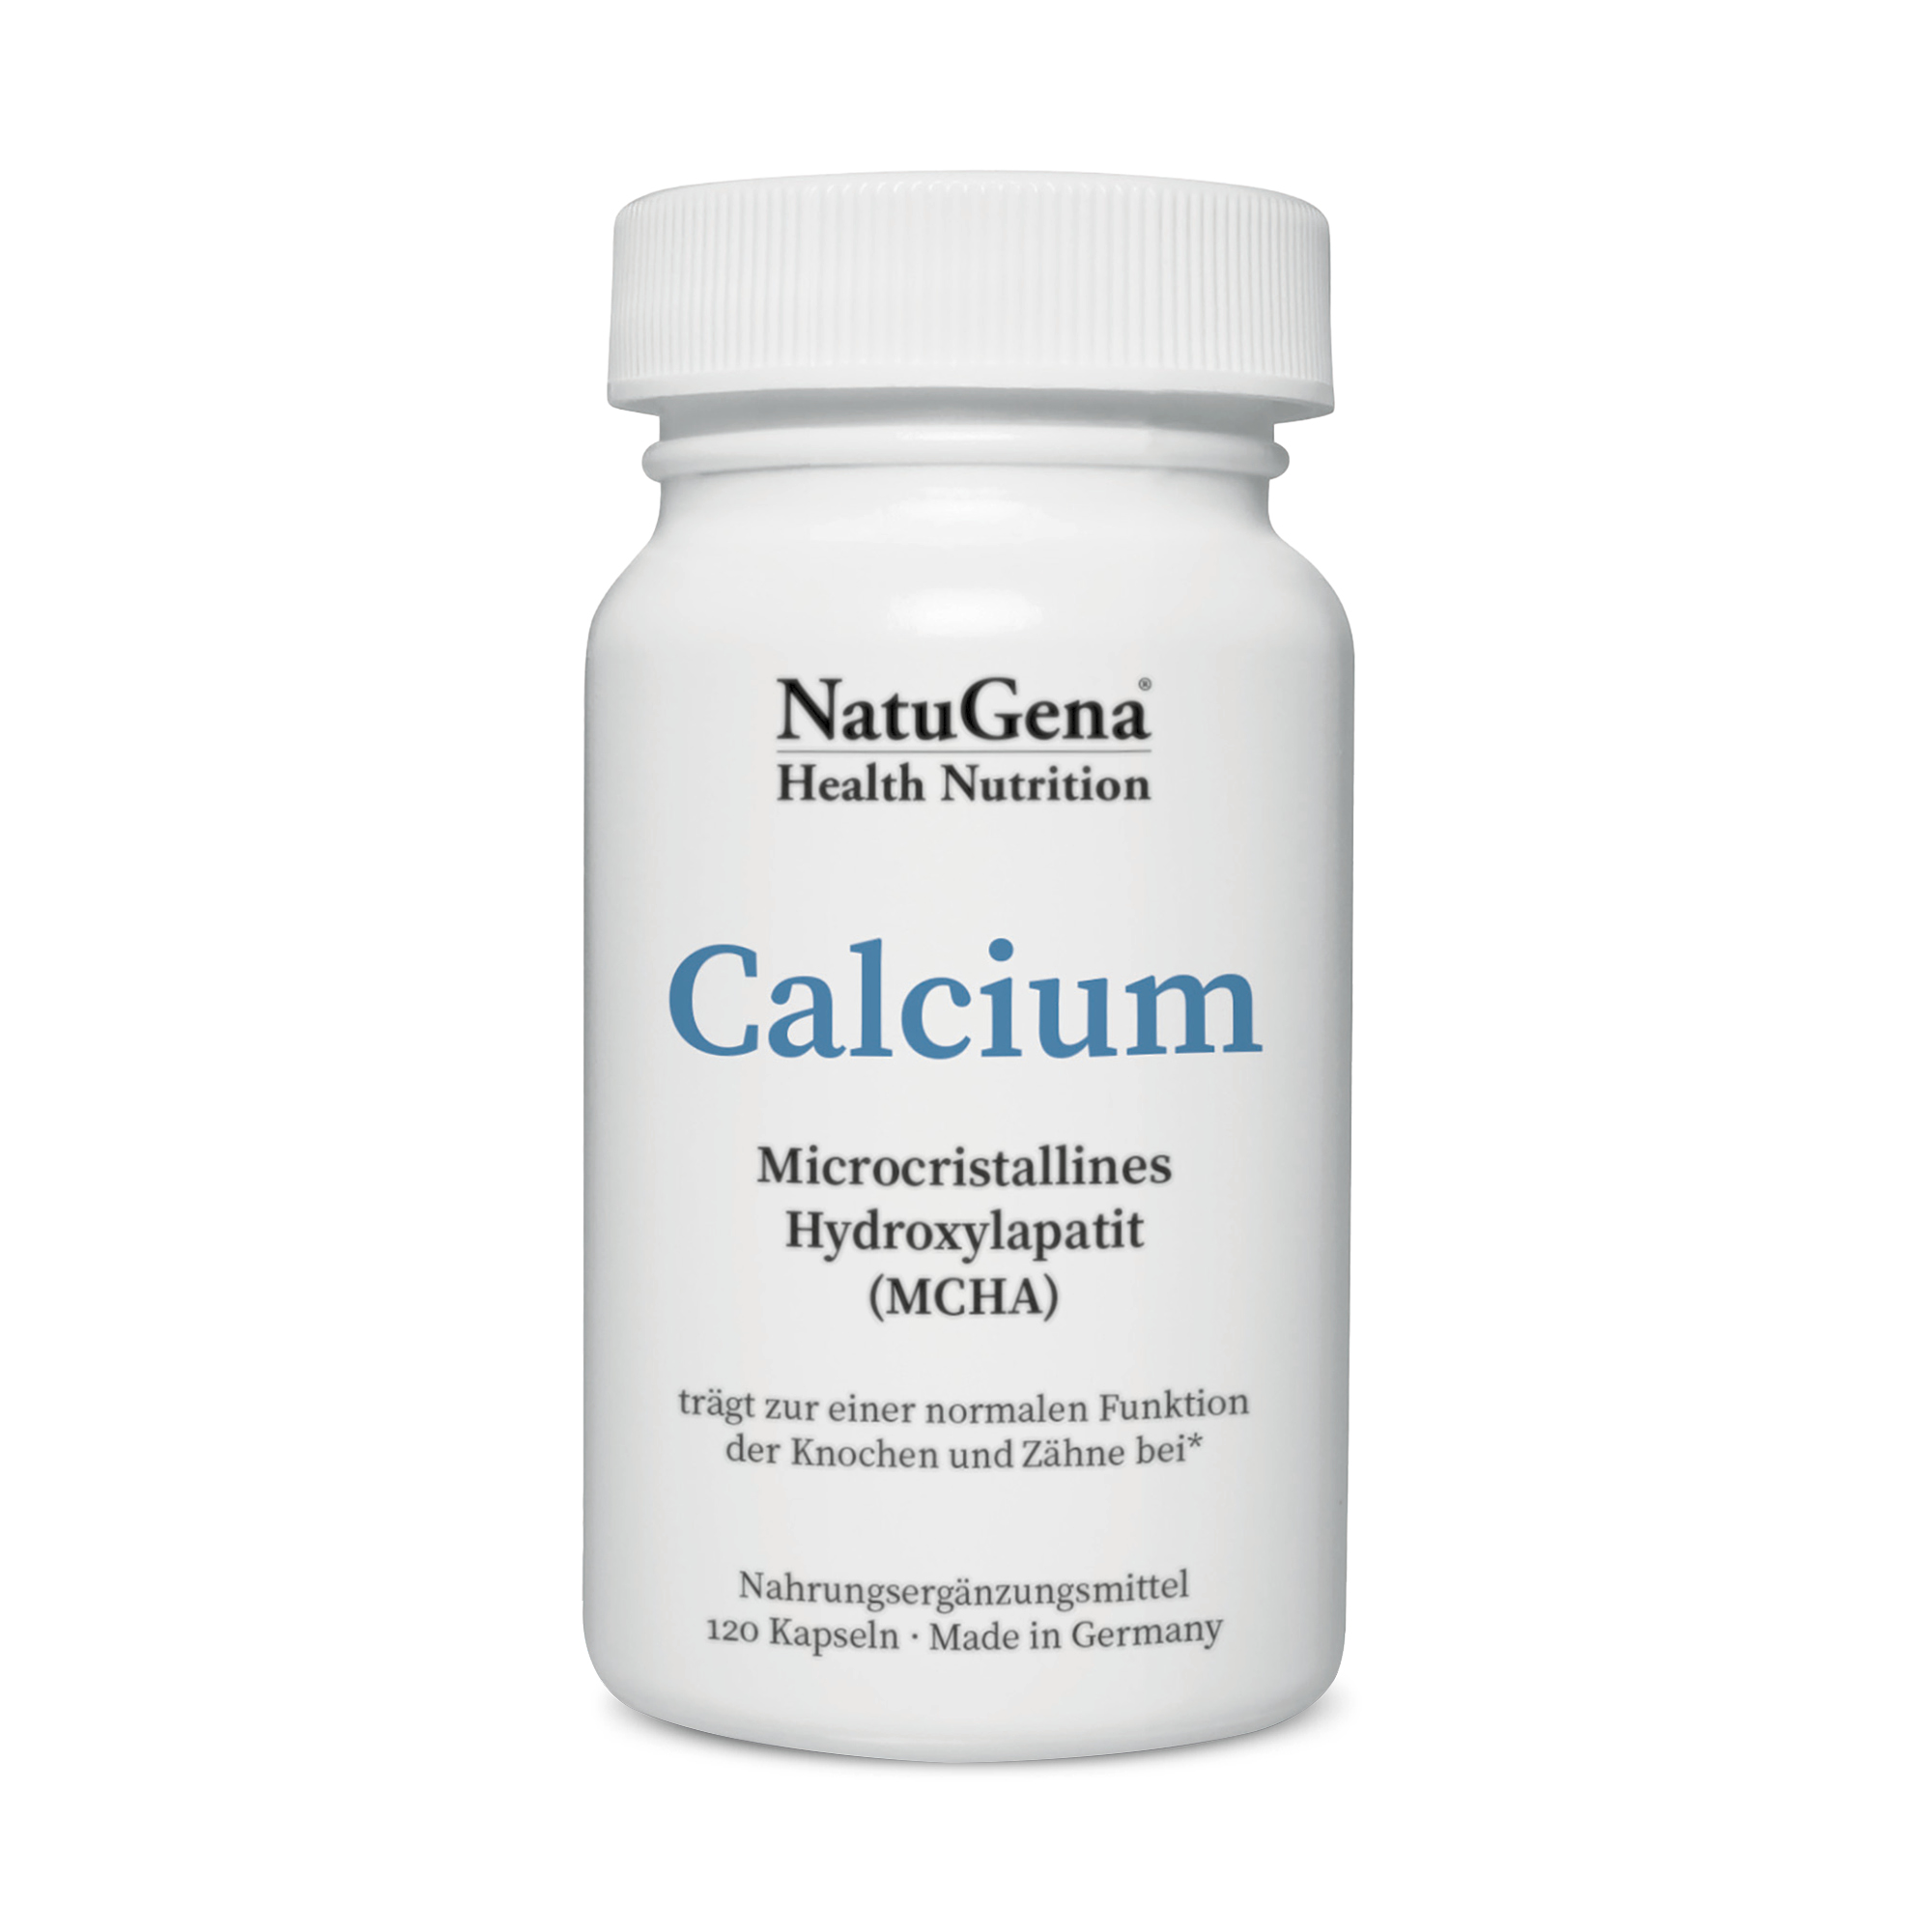 NatuGena Calcium (MCHA) | 120 Kapseln | Natürlicher Calcium-Komplex für gesunde Knochen, Nägel und Zähne